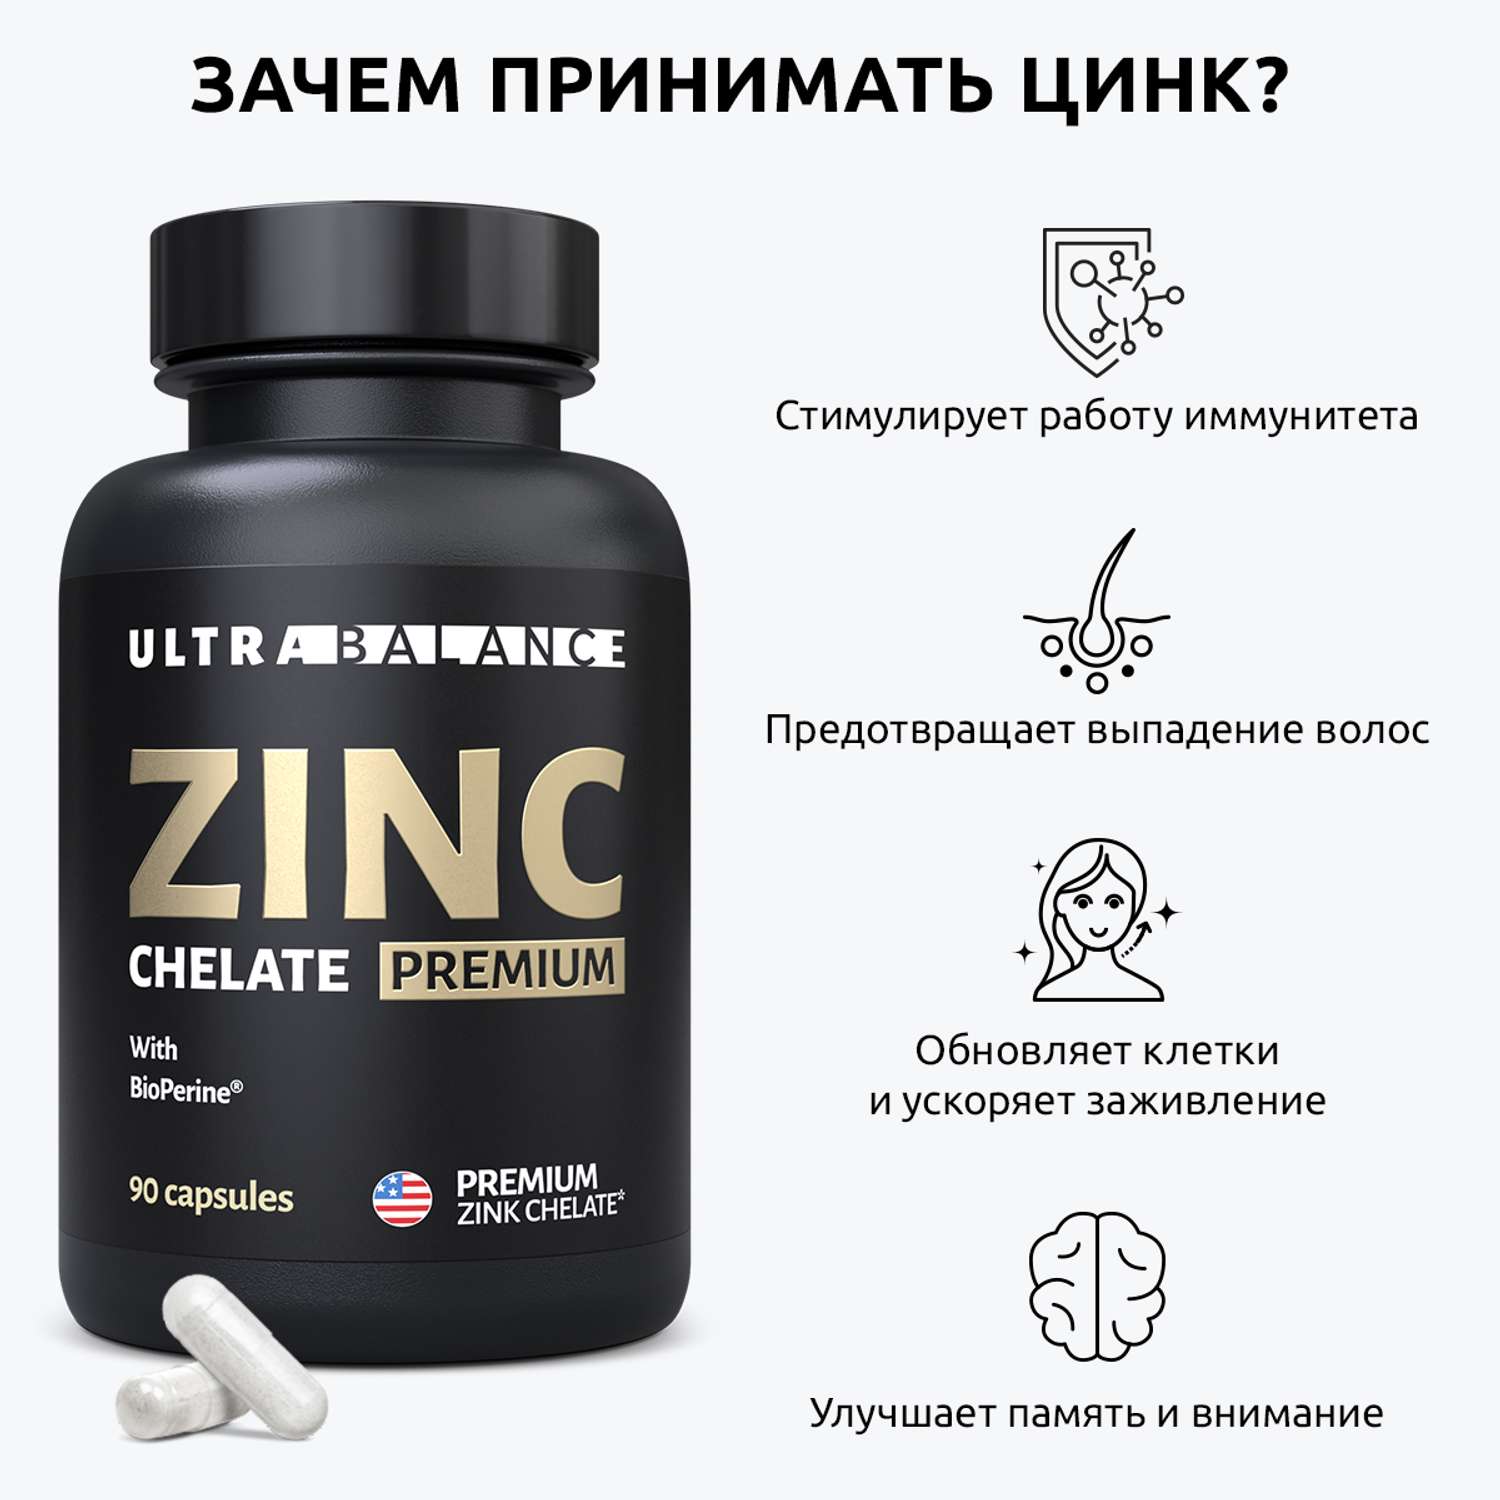 Цинк хелат премиум UltraBalance zinc chelated with bioperine с пиперином витамин бад комплекс 90 капсул - фото 2